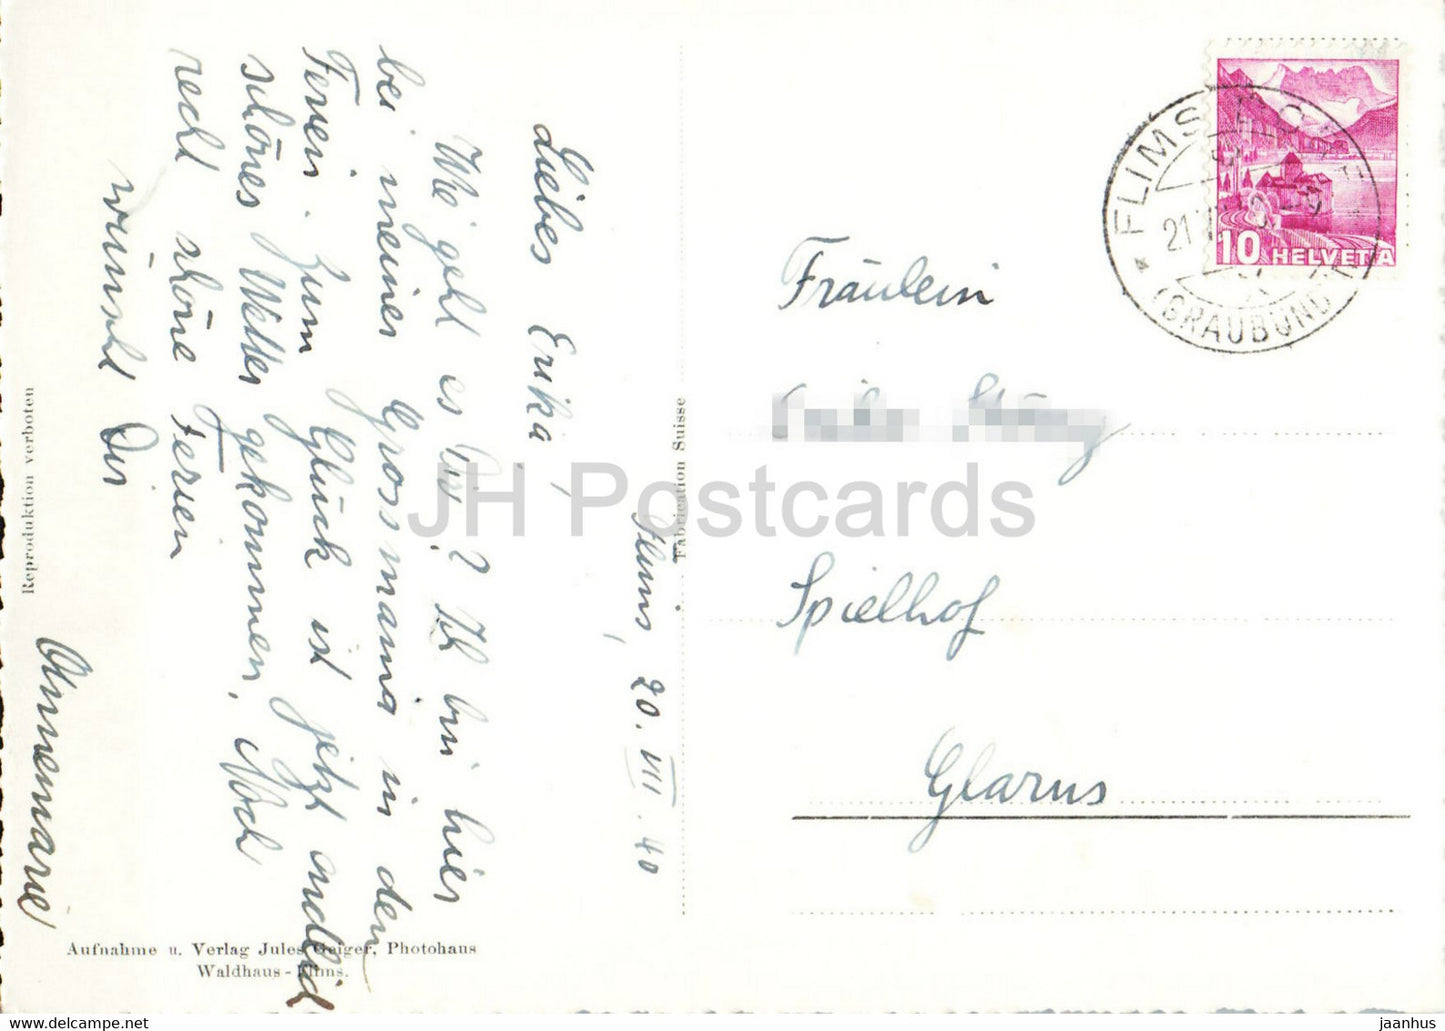 Flims mit Flimserstein - 1639 - carte postale ancienne - 1940 - Suisse - utilisé